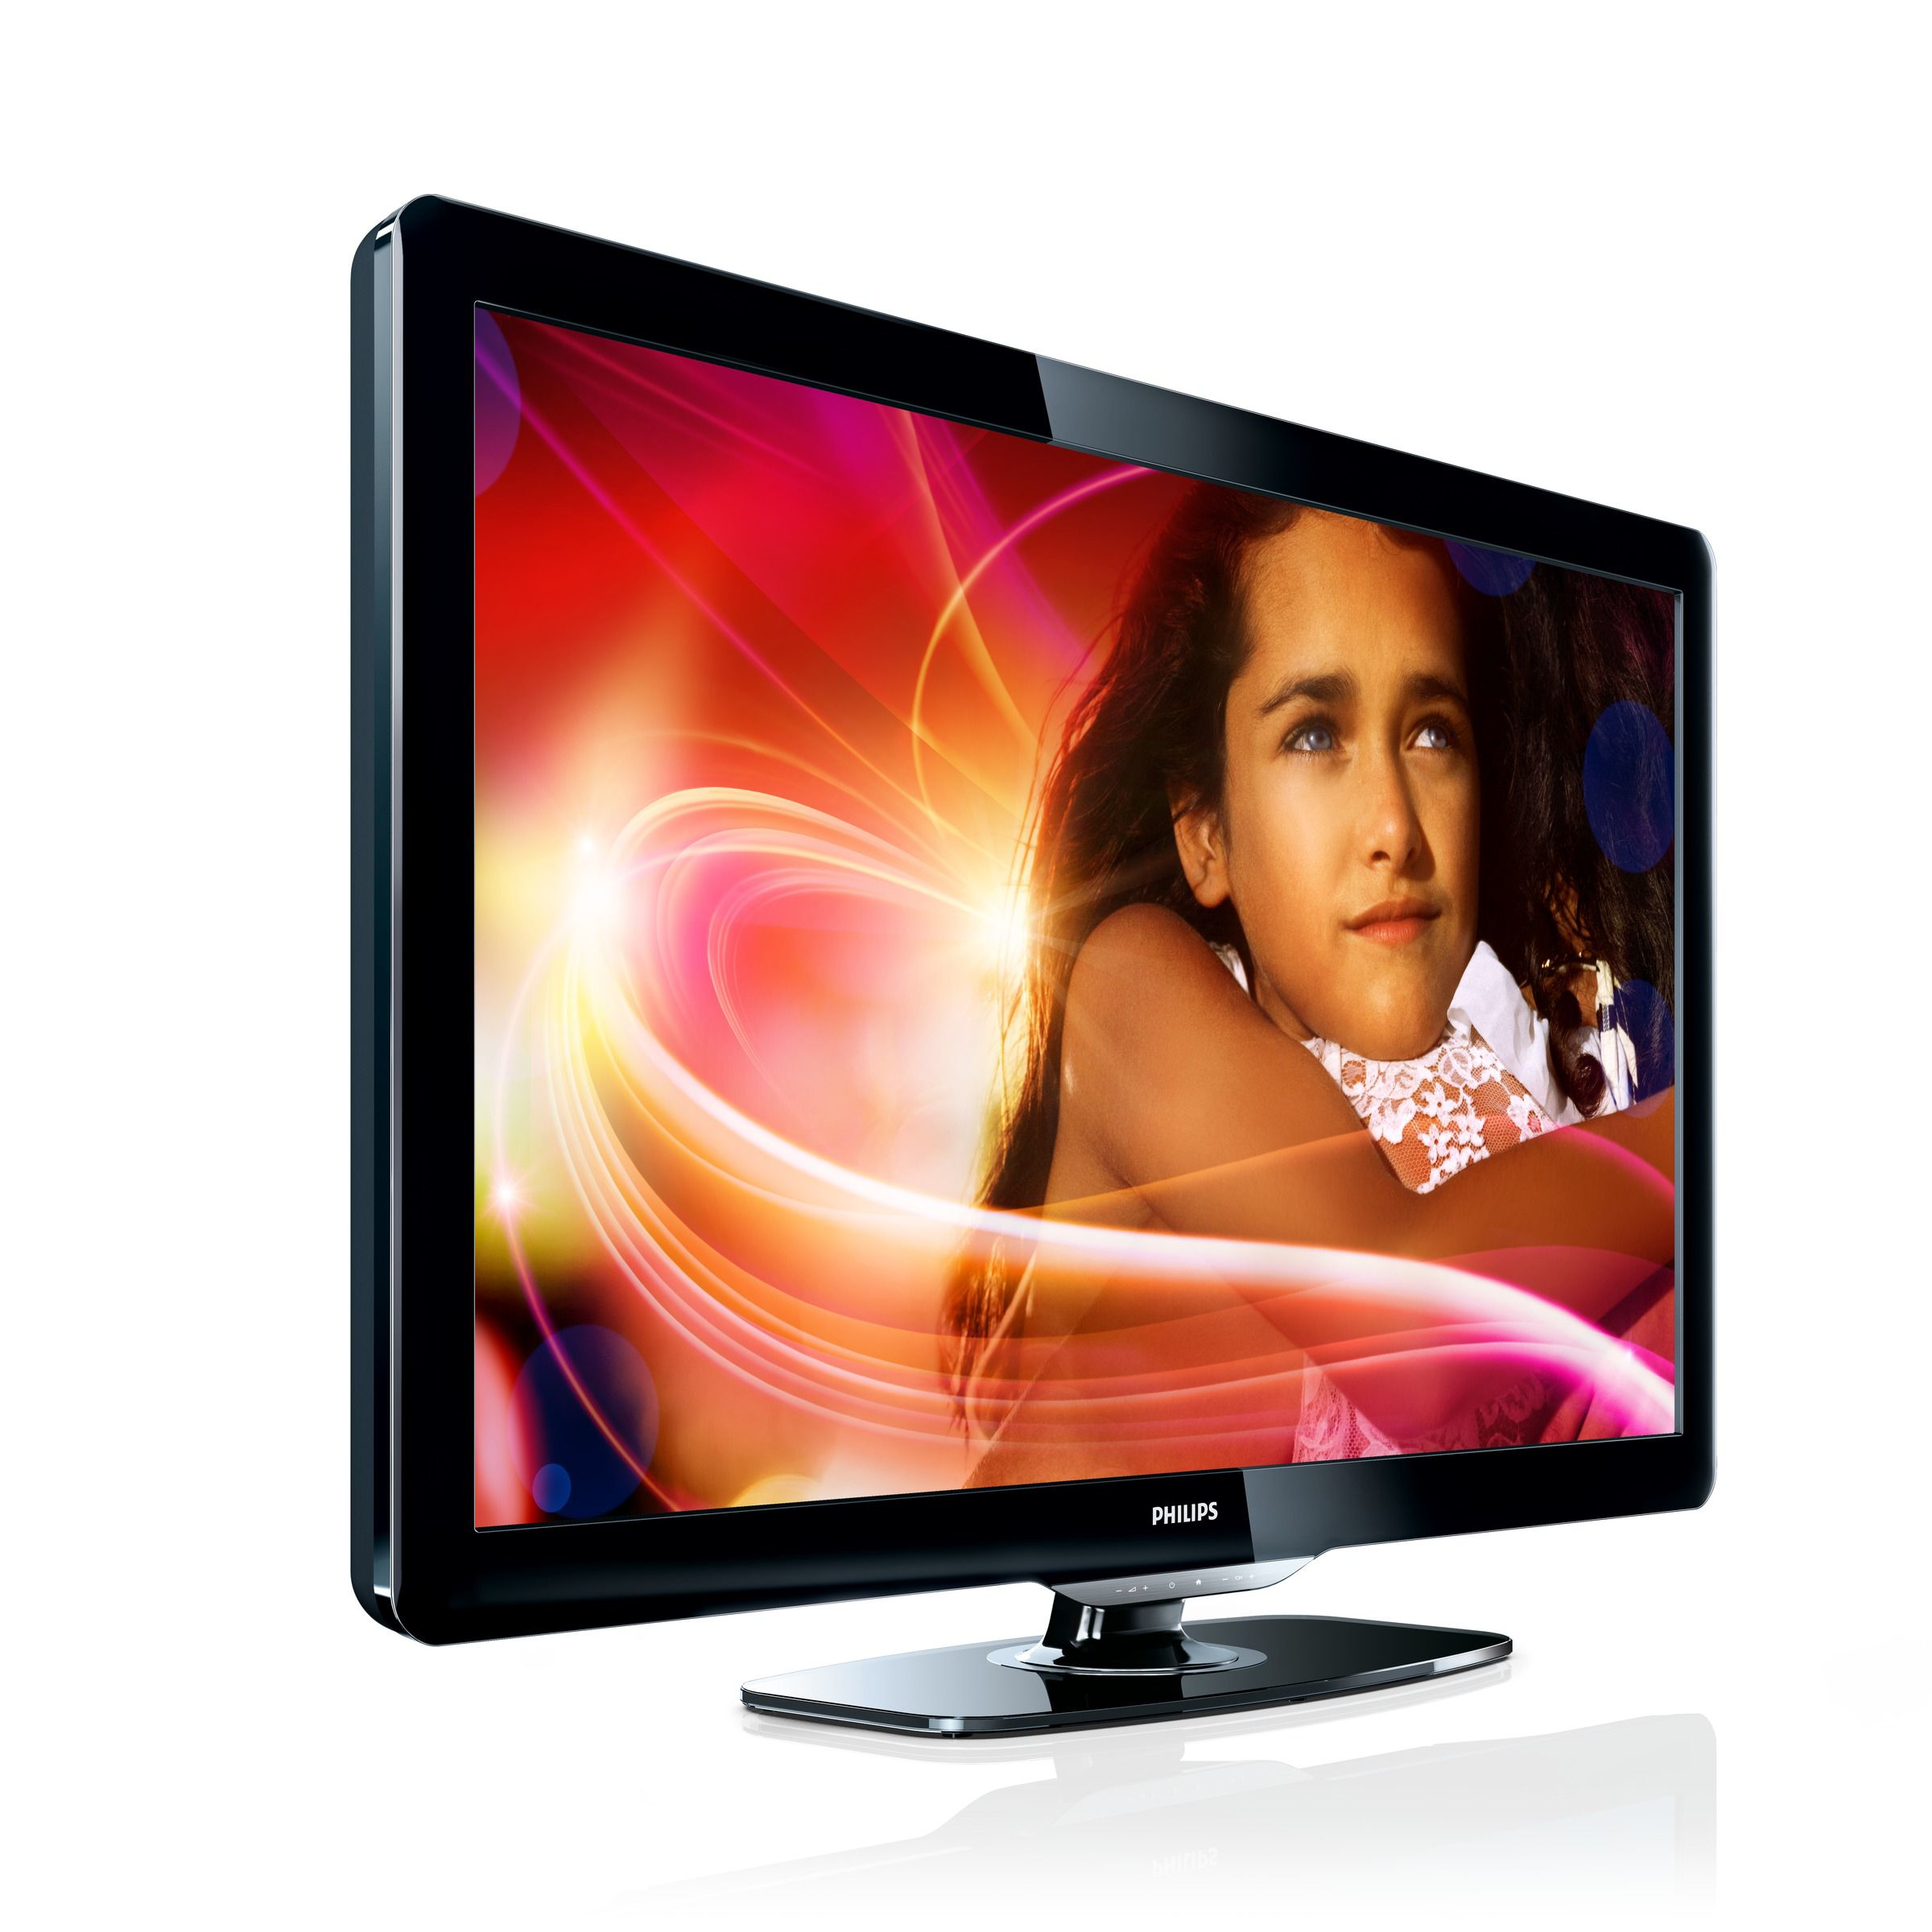 Купить телевизор 60 см. Телевизор Philips 37pfl4606h/60. Philips 42pfl4606. Филипс 47pfl4606h/60. 32pfl4606h/60.